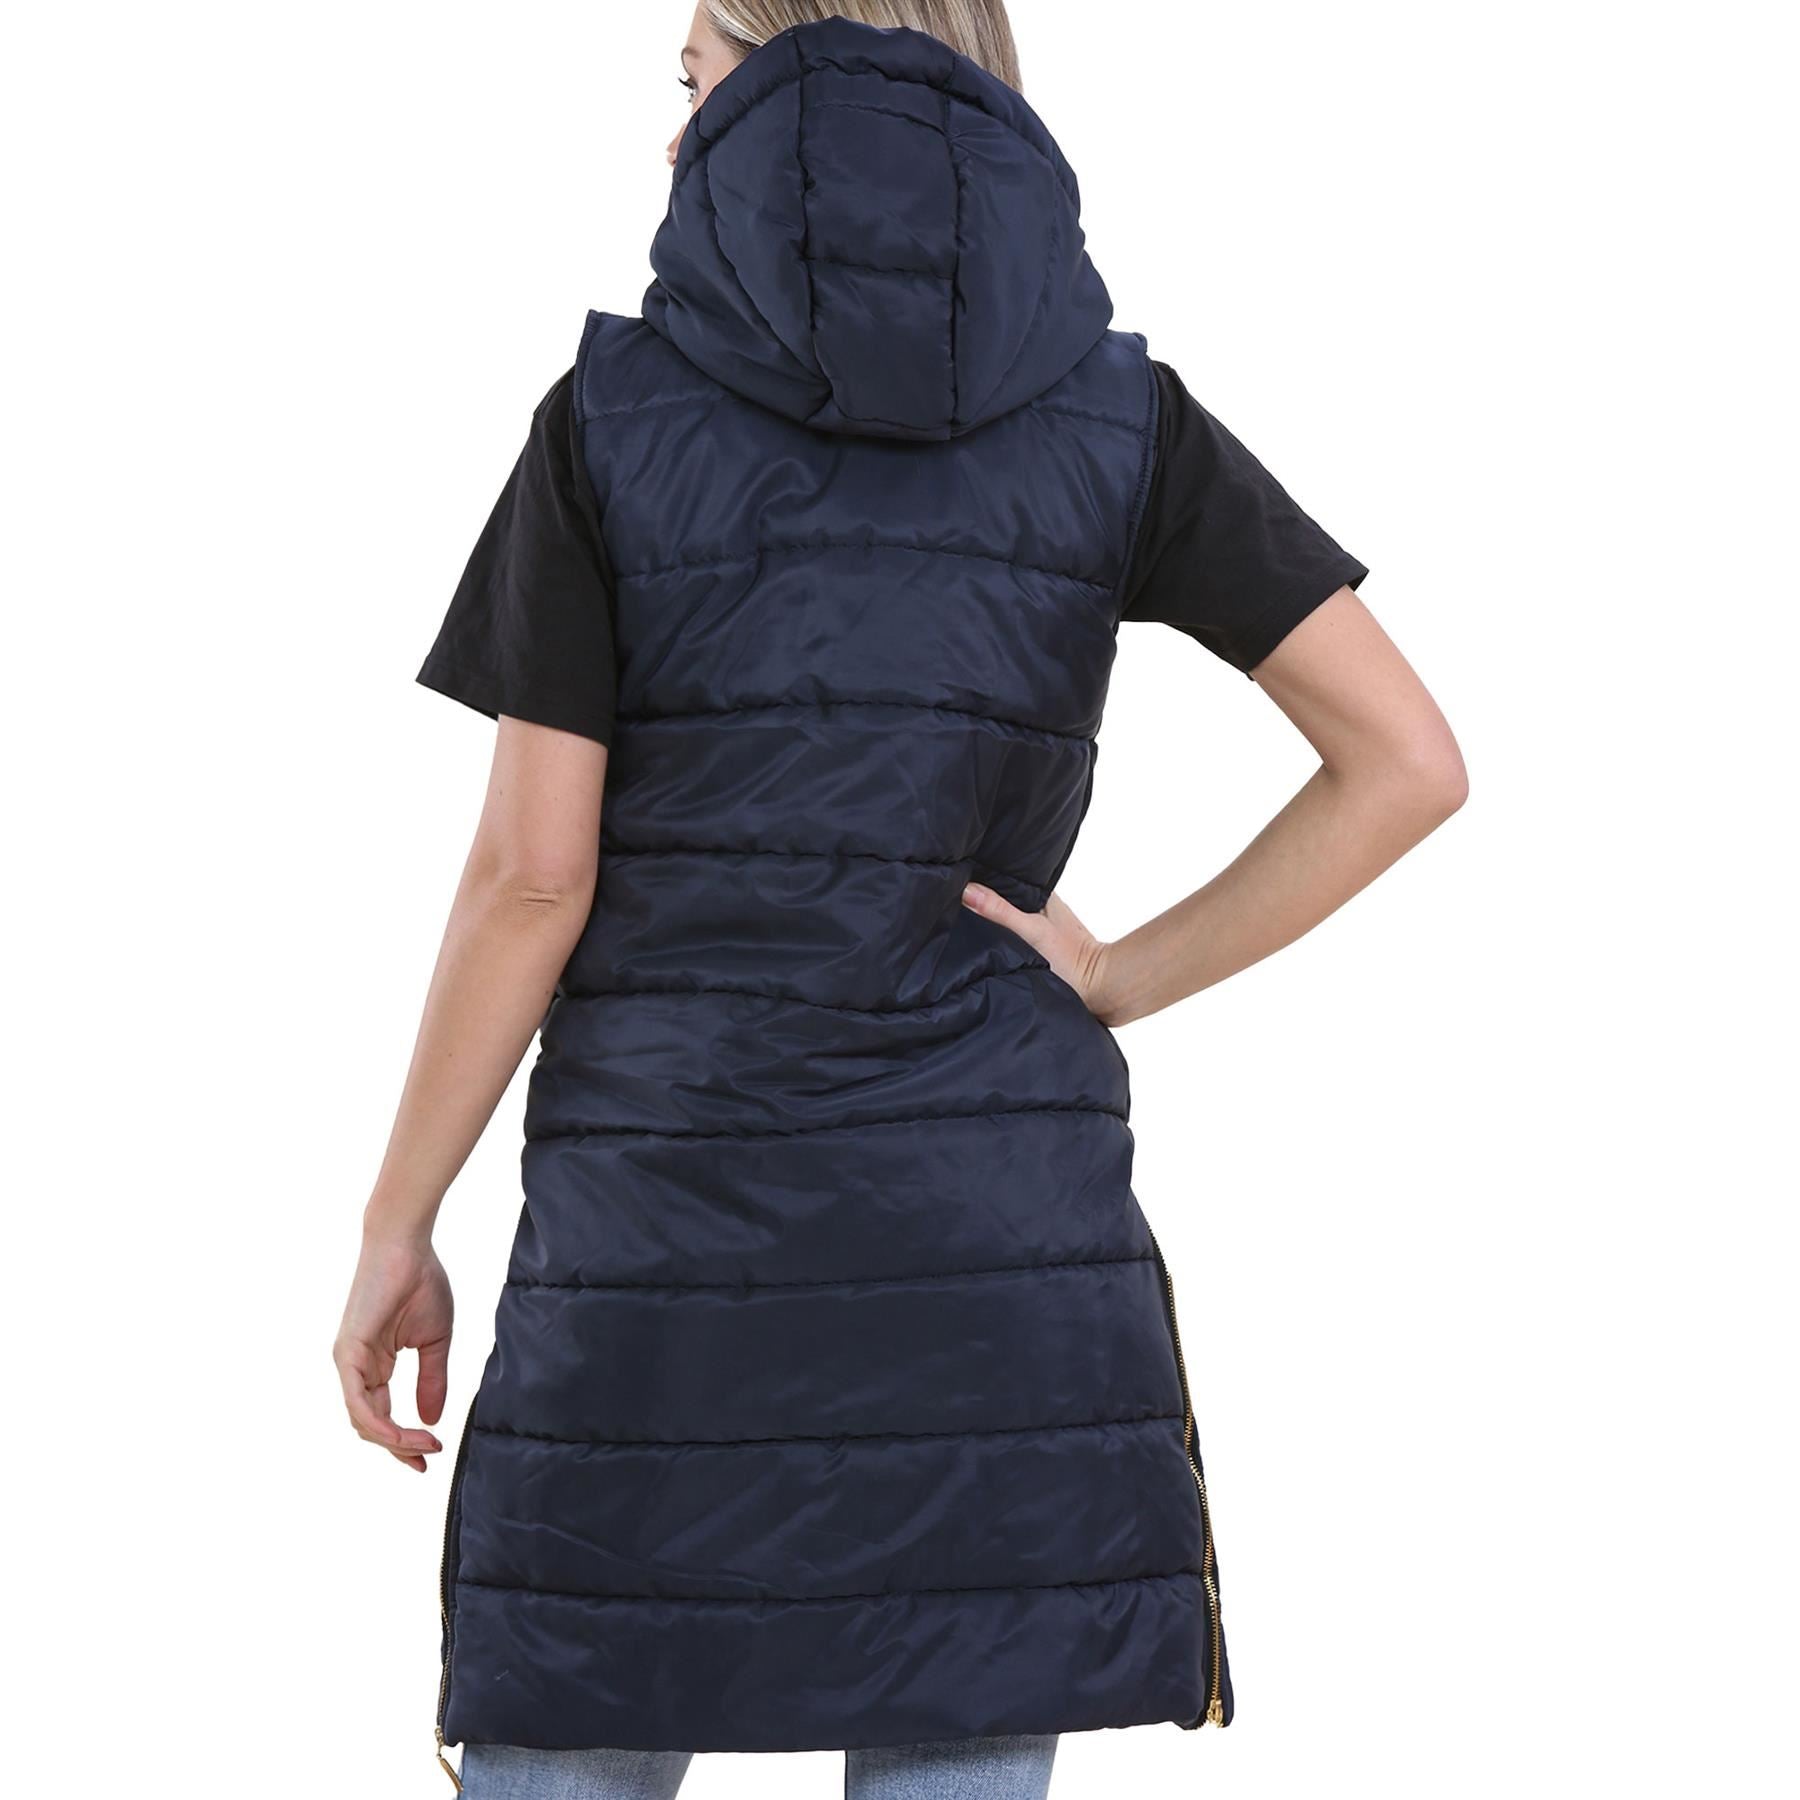 Ladies Oversized Gilet Sleeveless Fashion Navy Jackets